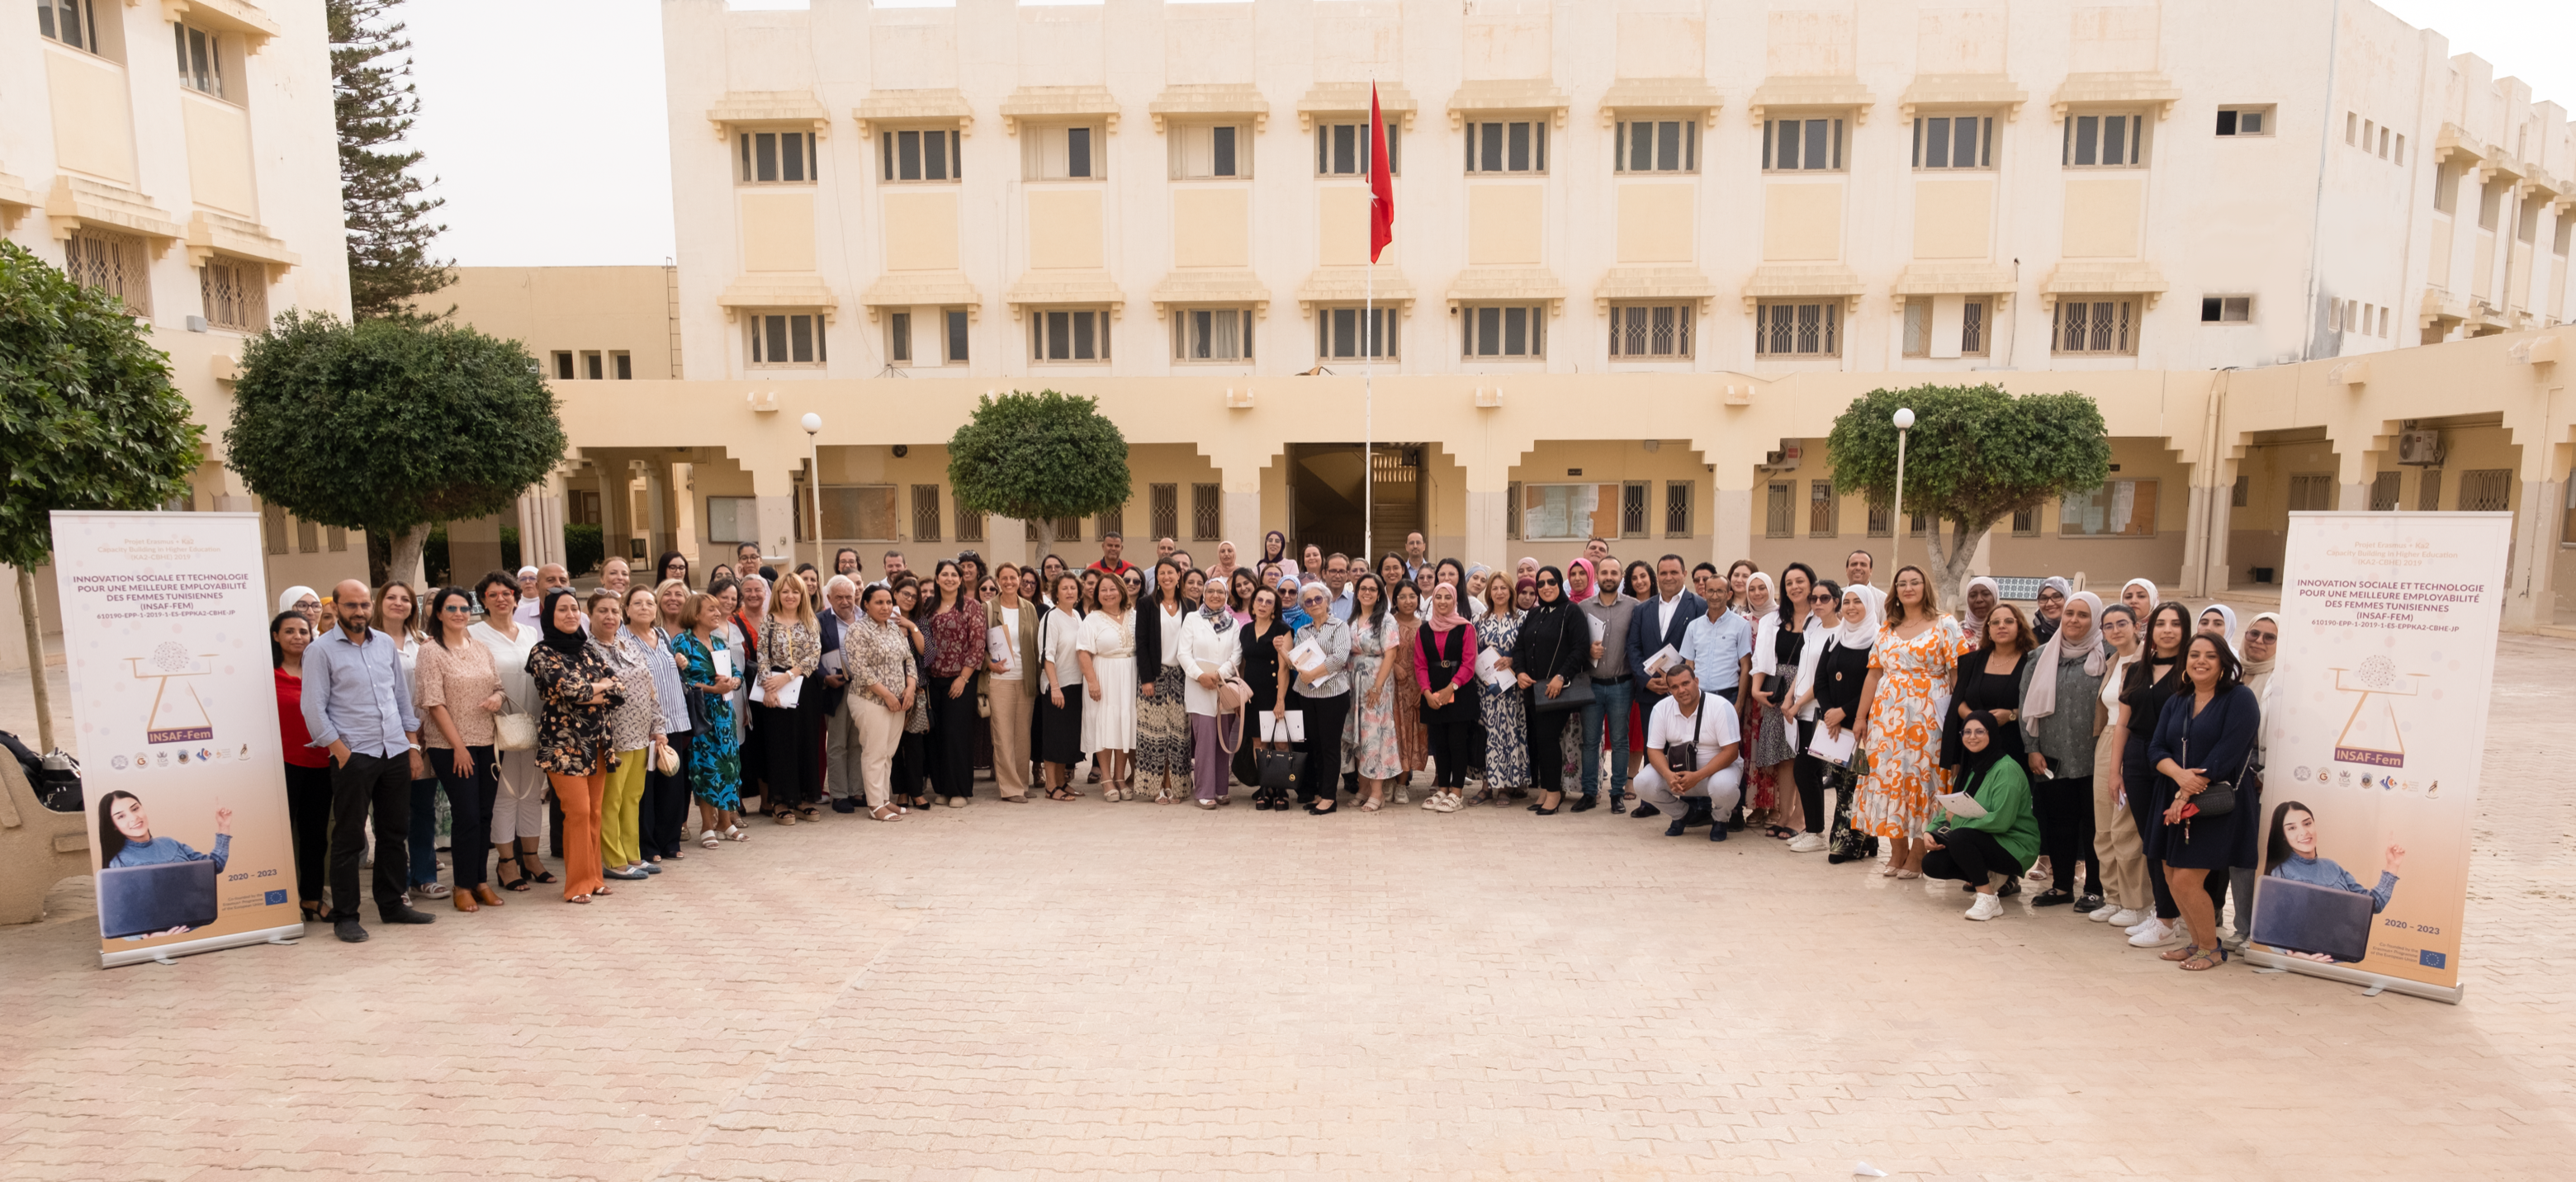 El proyecto europeo INSAF-Fem celebra su clausura en la Universidad de Sfax (Túnez) tras 4 años de cooperación internacional para el refuerzo de capacidades